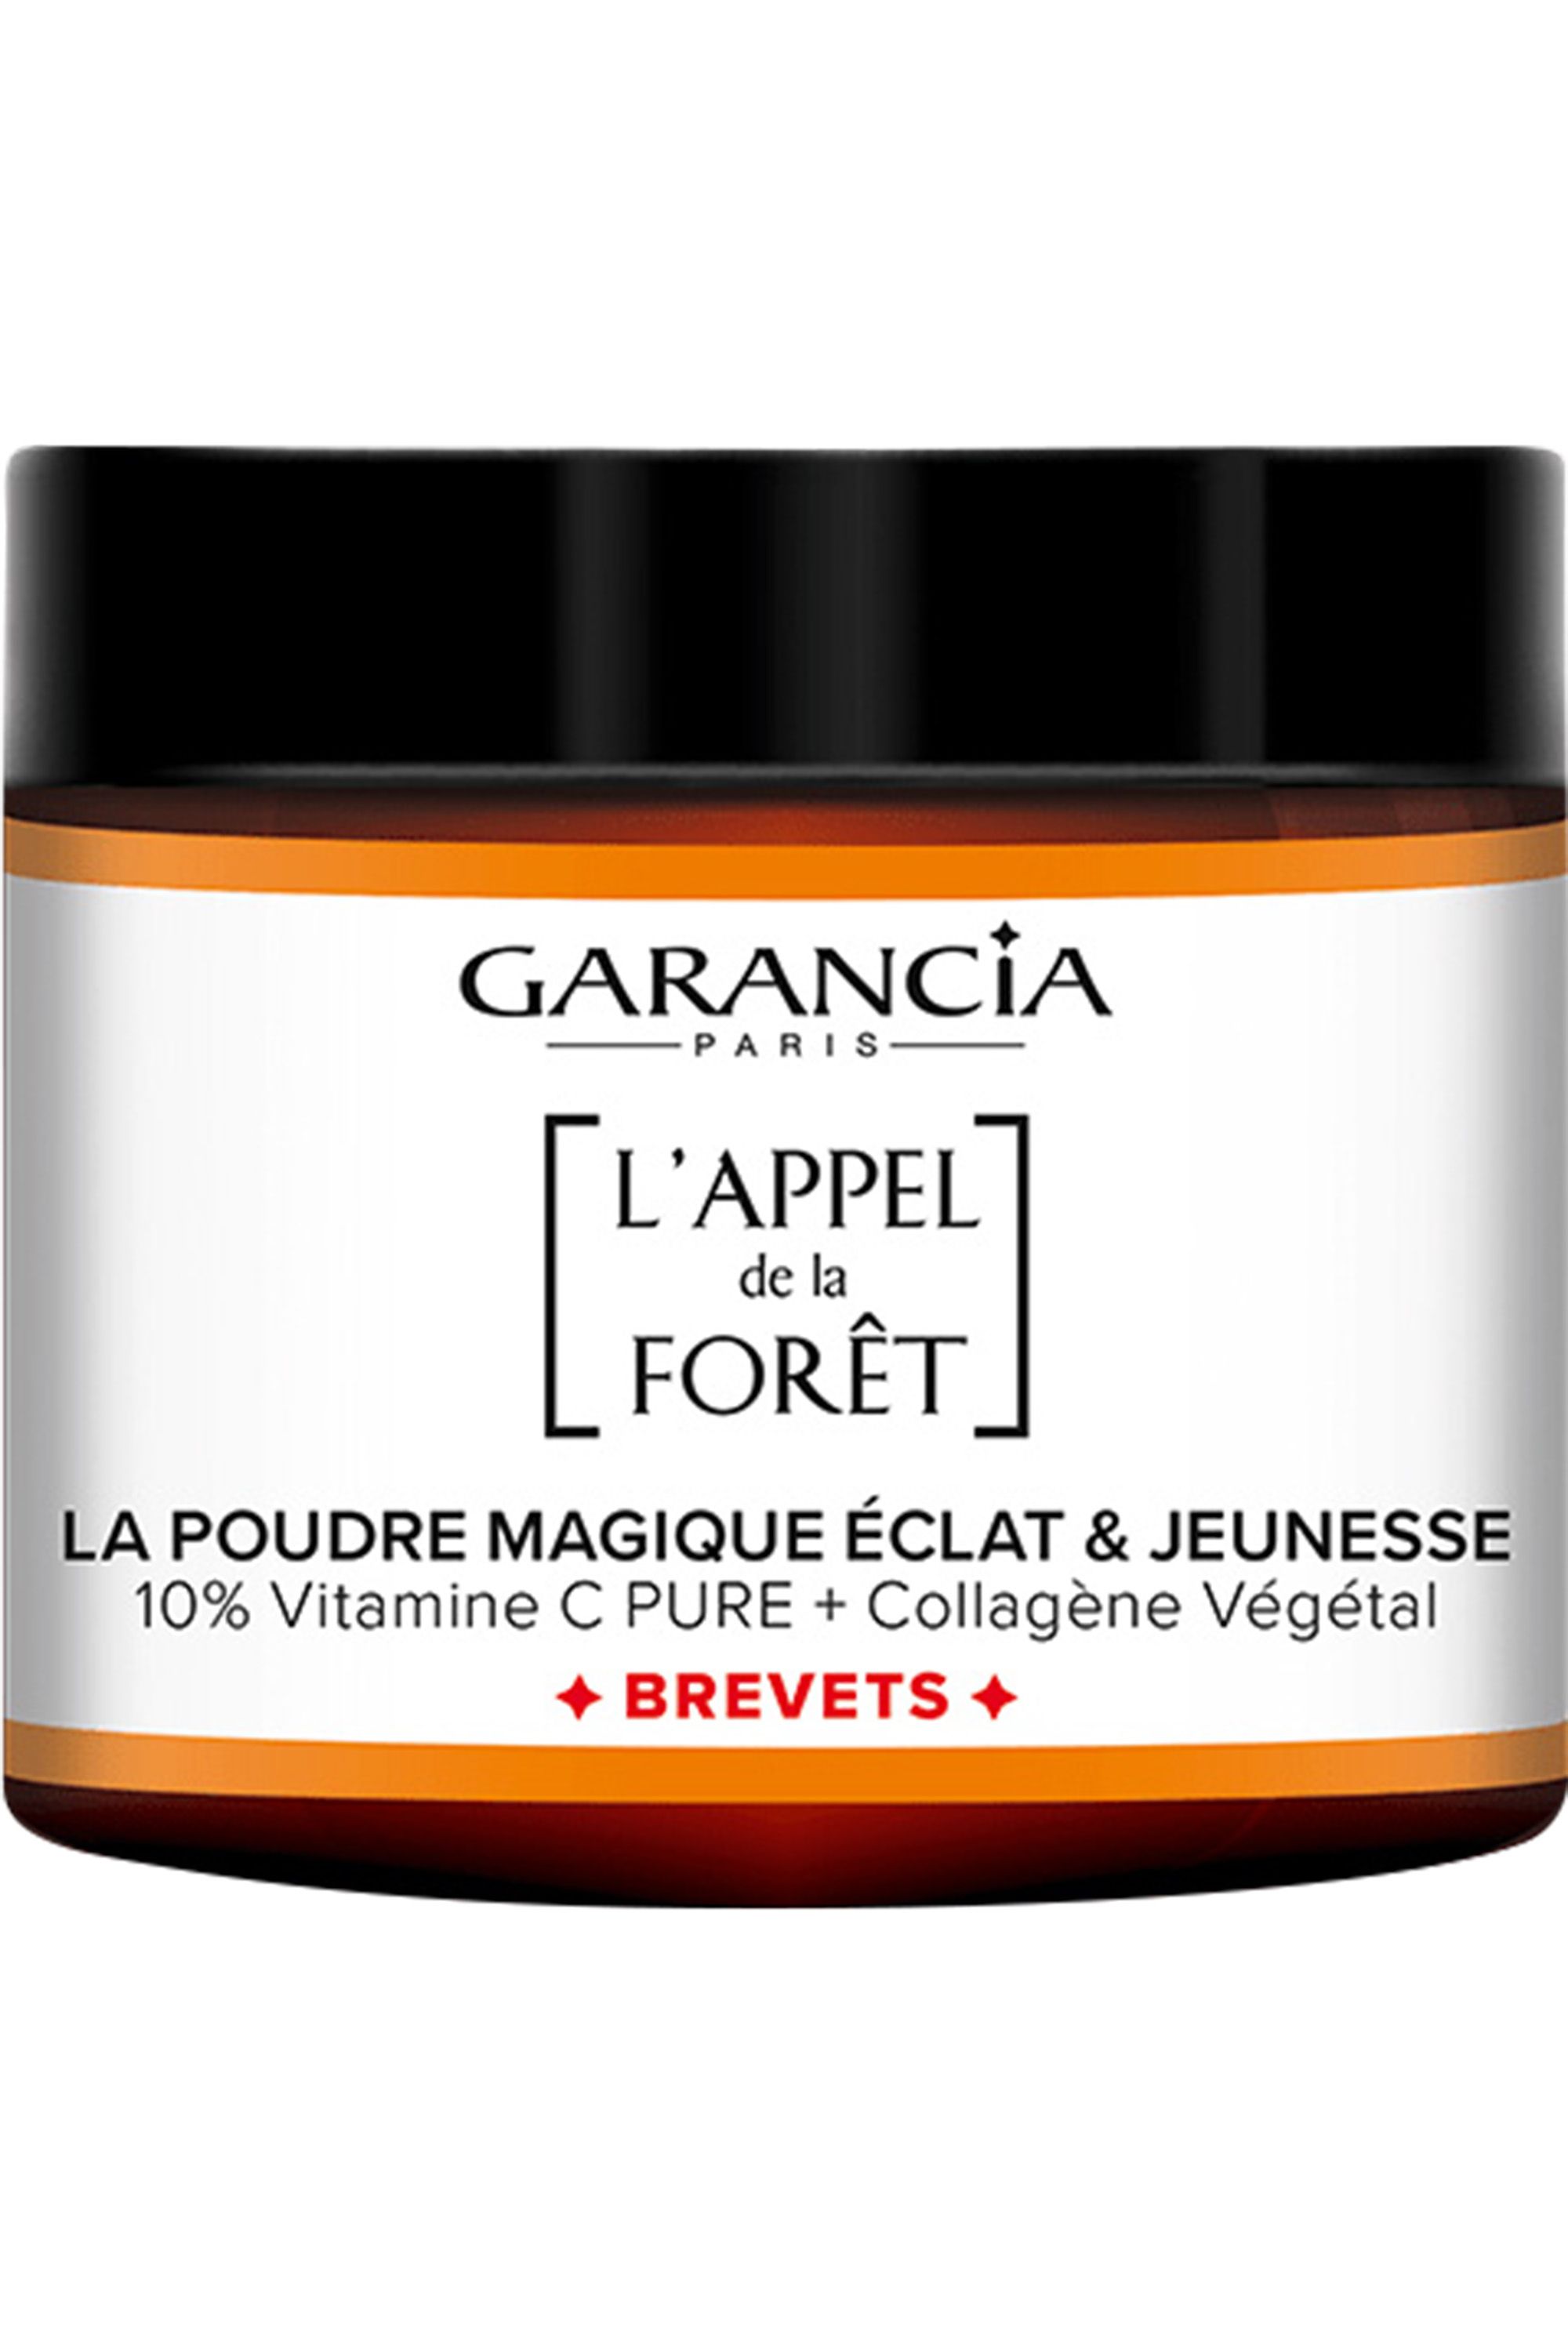 Garancia - La Poudre Magique Eclat & Jeunesse L'Appel de la Forêt - Blissim